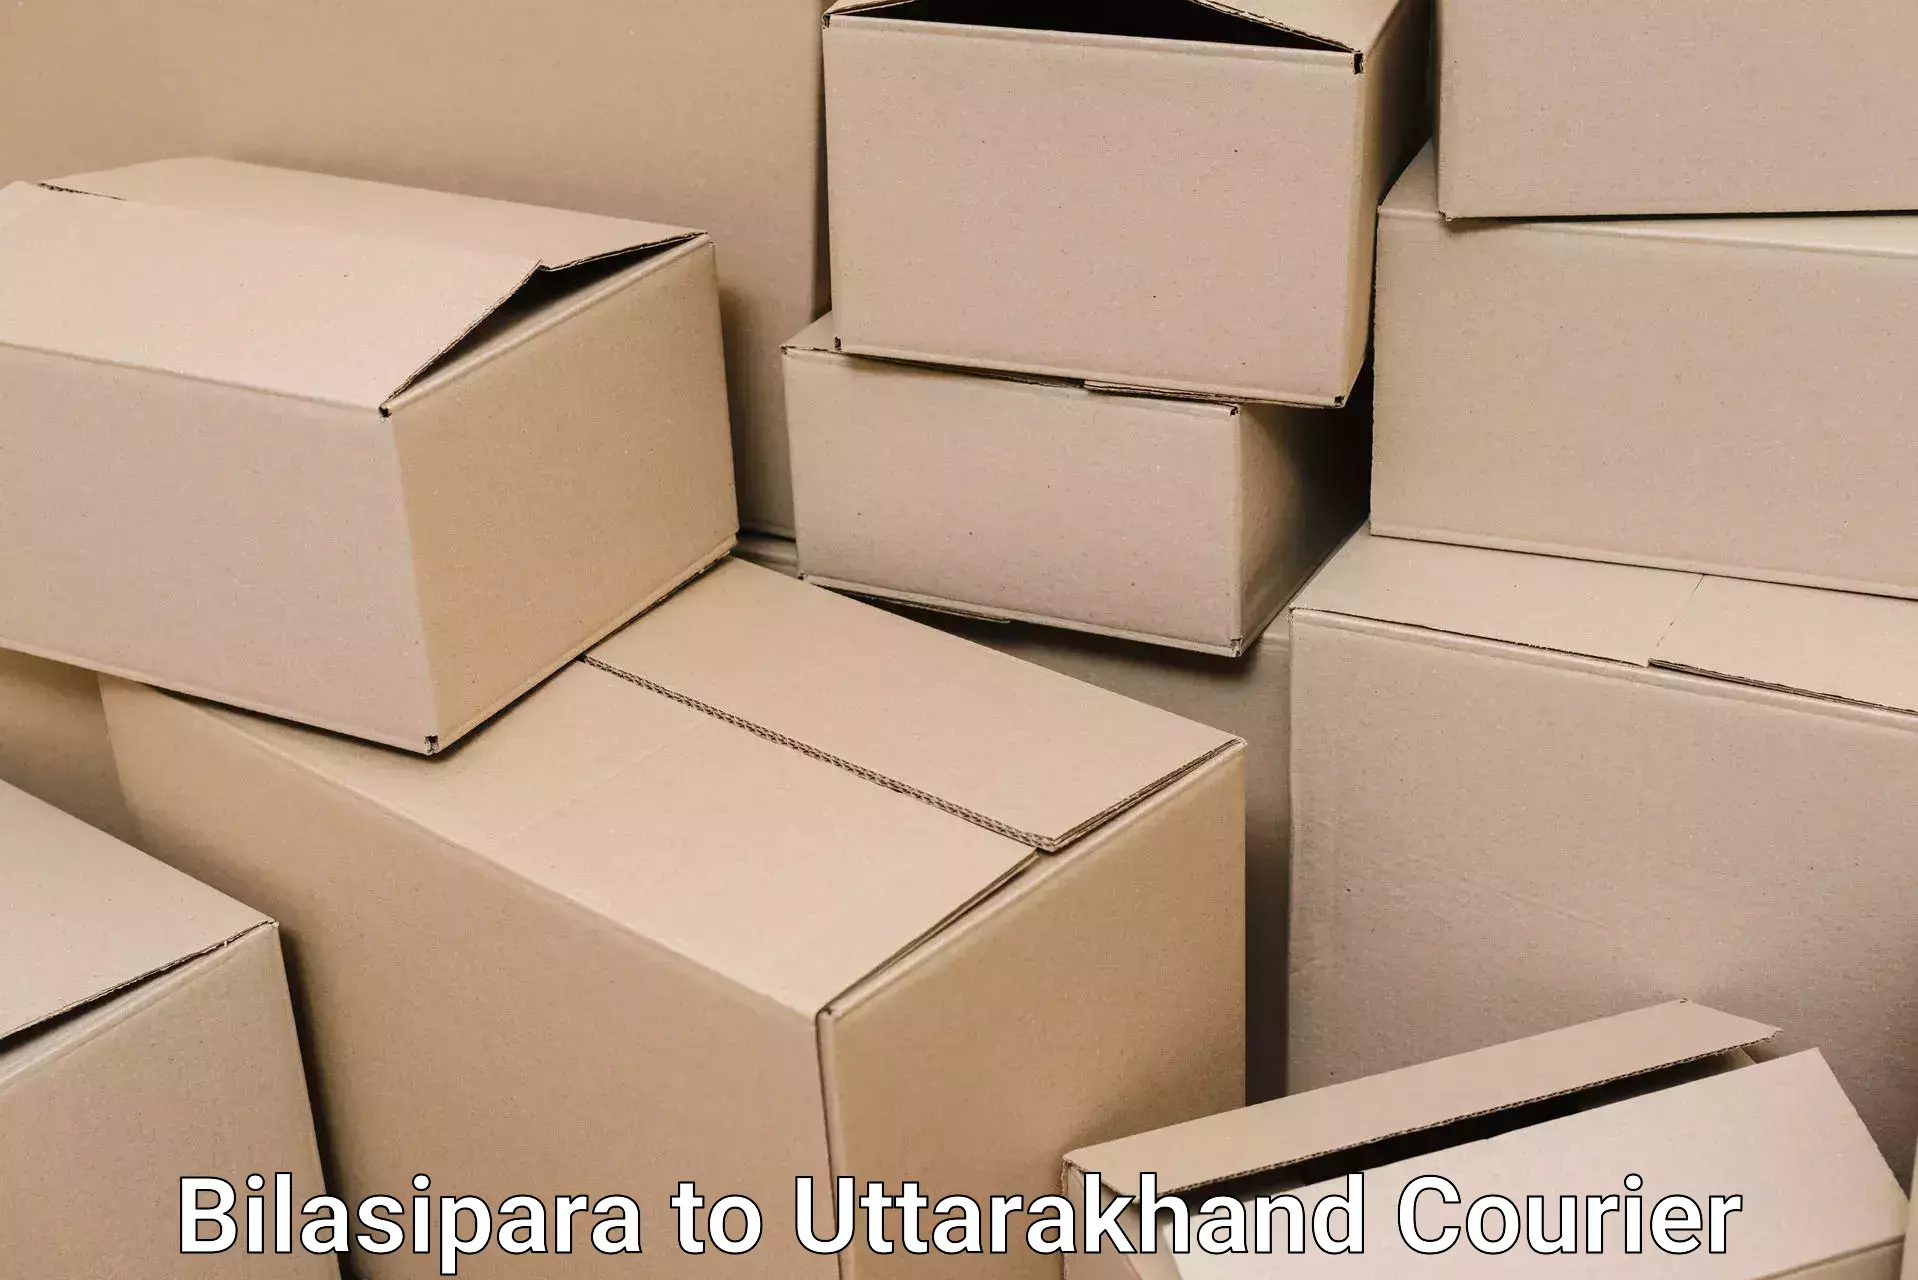 Skilled furniture transporters Bilasipara to Rishikesh